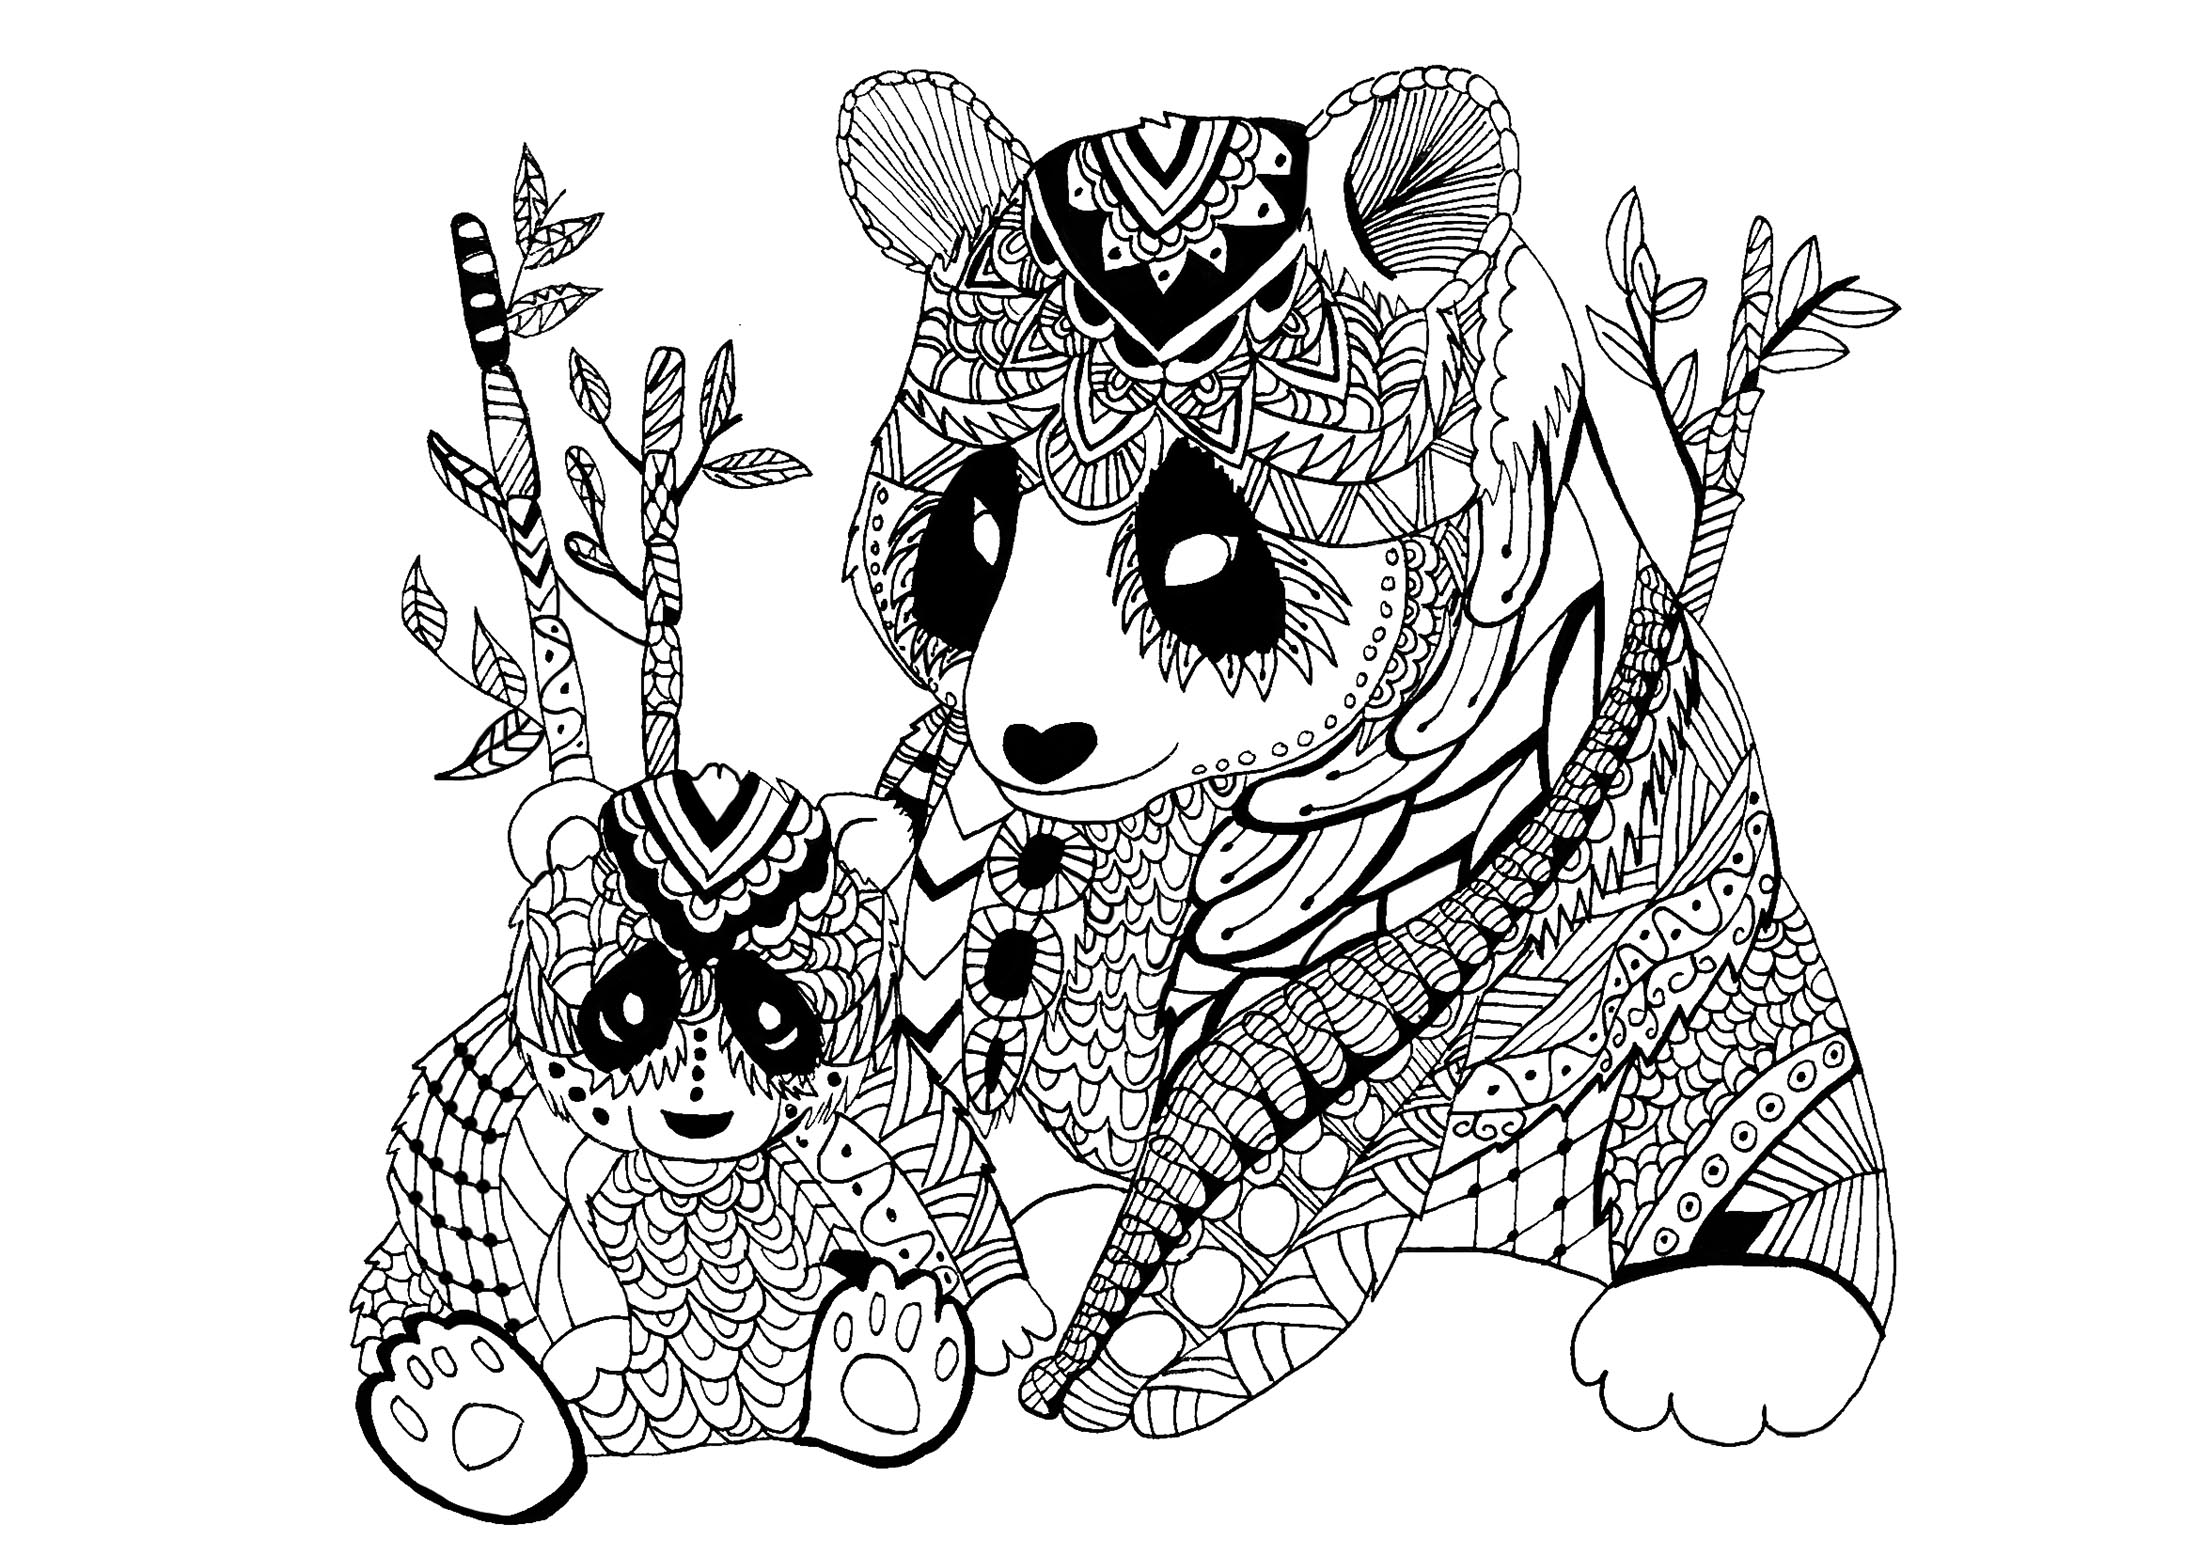 Desenhos de Panda para colorir - Páginas para impressão grátis